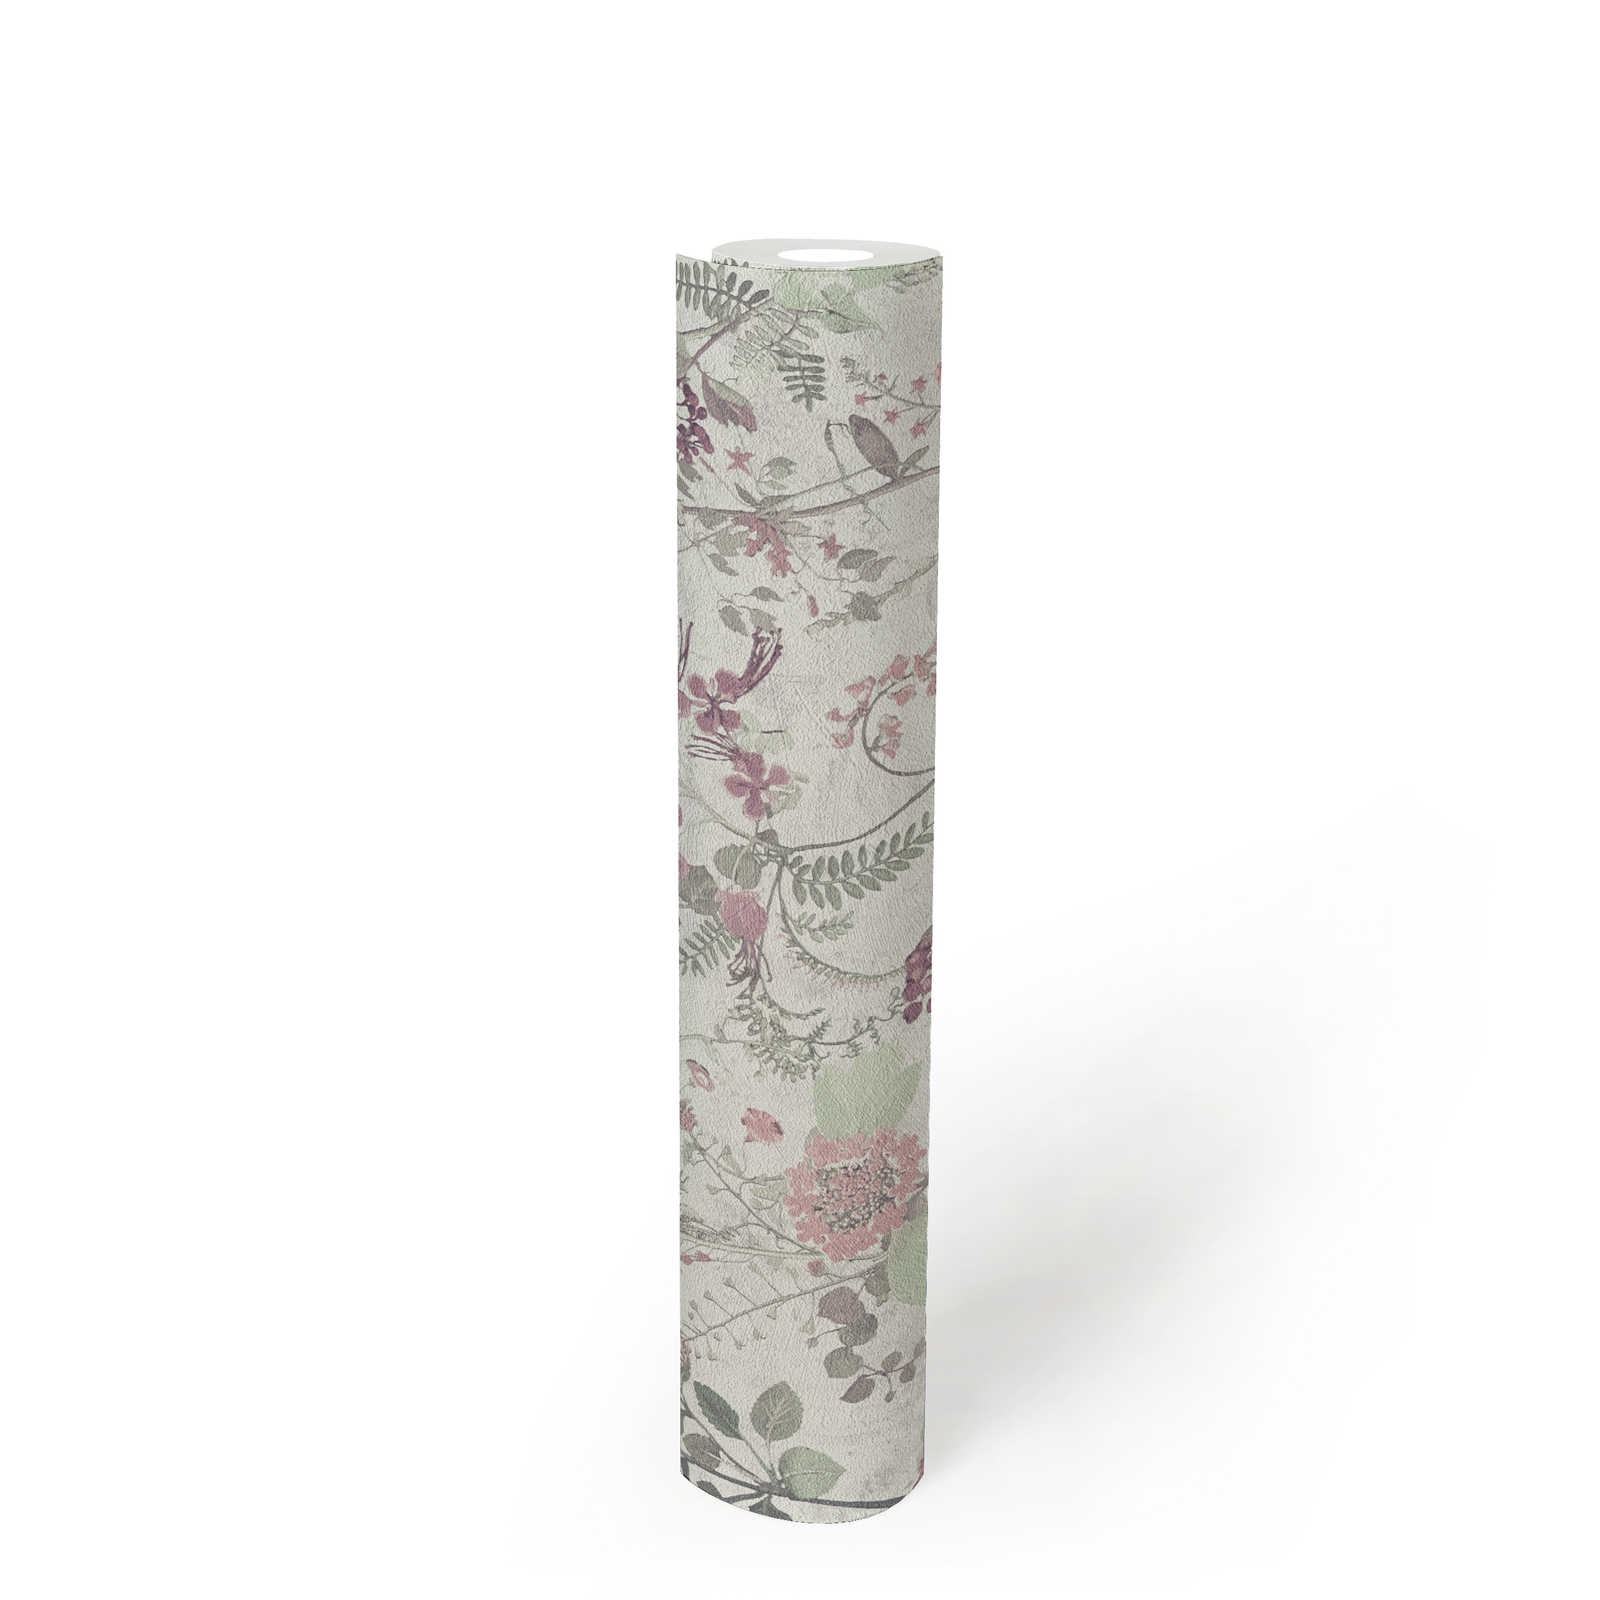             Papier peint naturel avec motifs floraux - gris, vert, rose
        